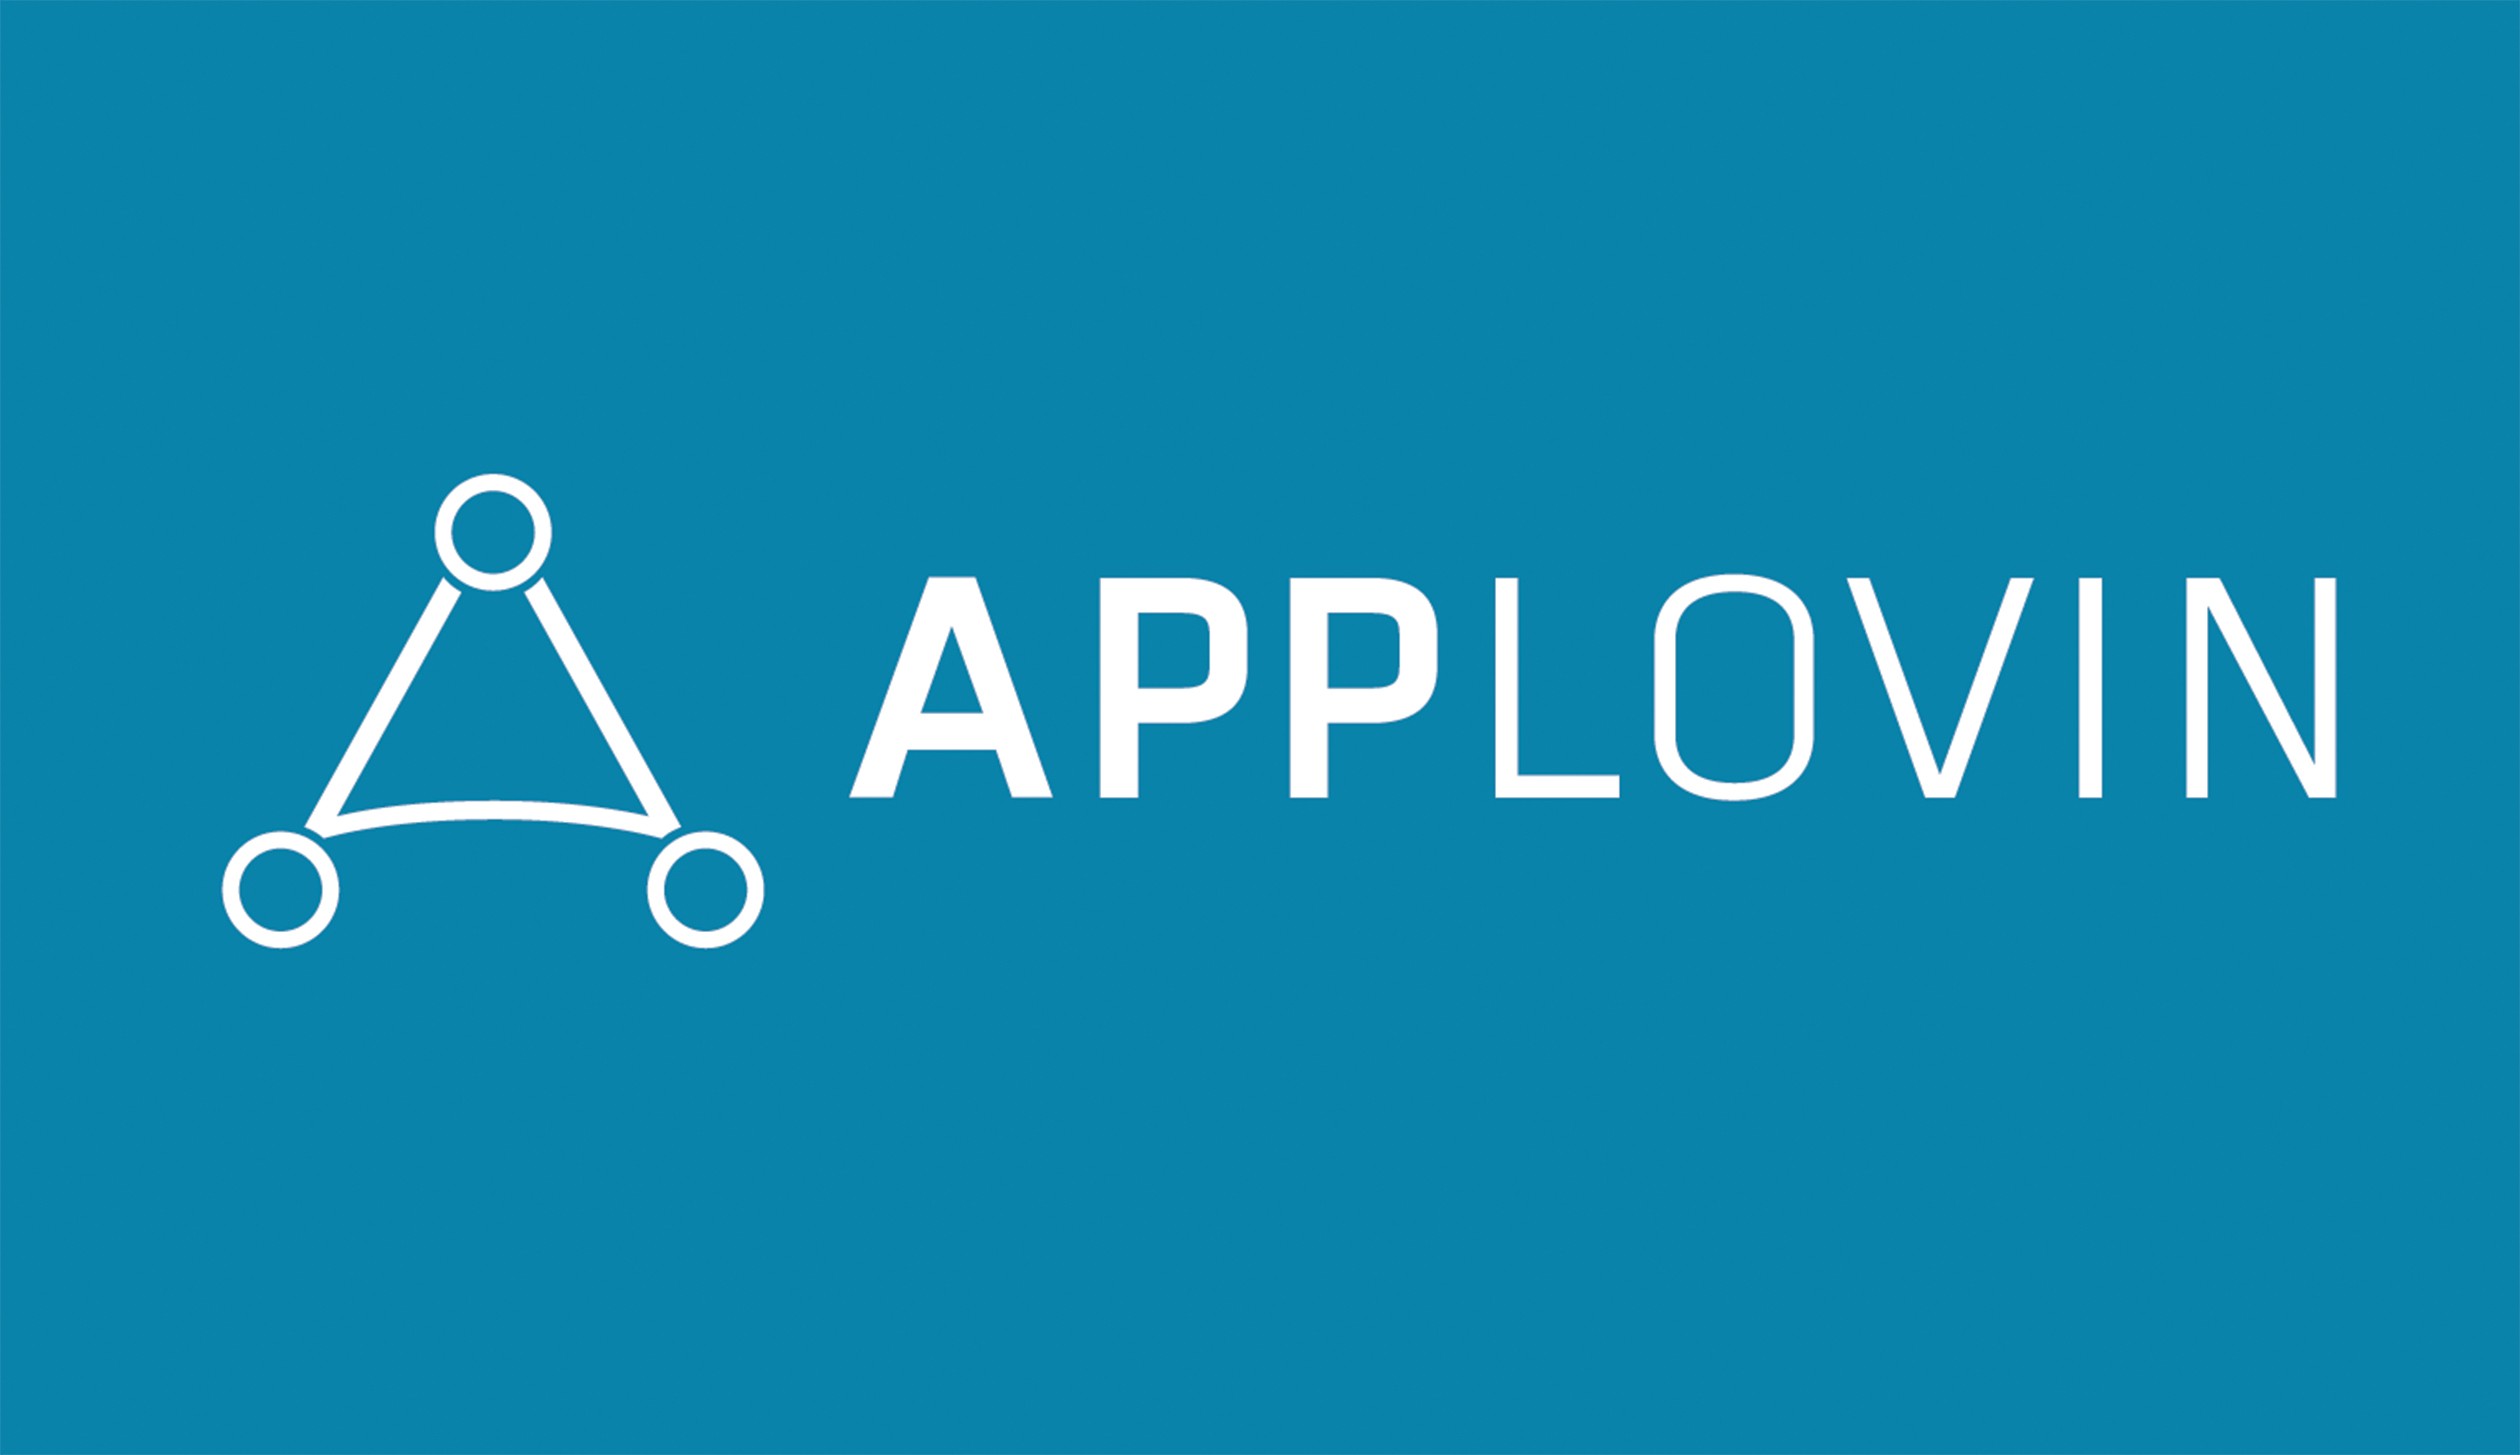 AppLovin запускает торговую площадку NFT для разработчиков мобильных игр